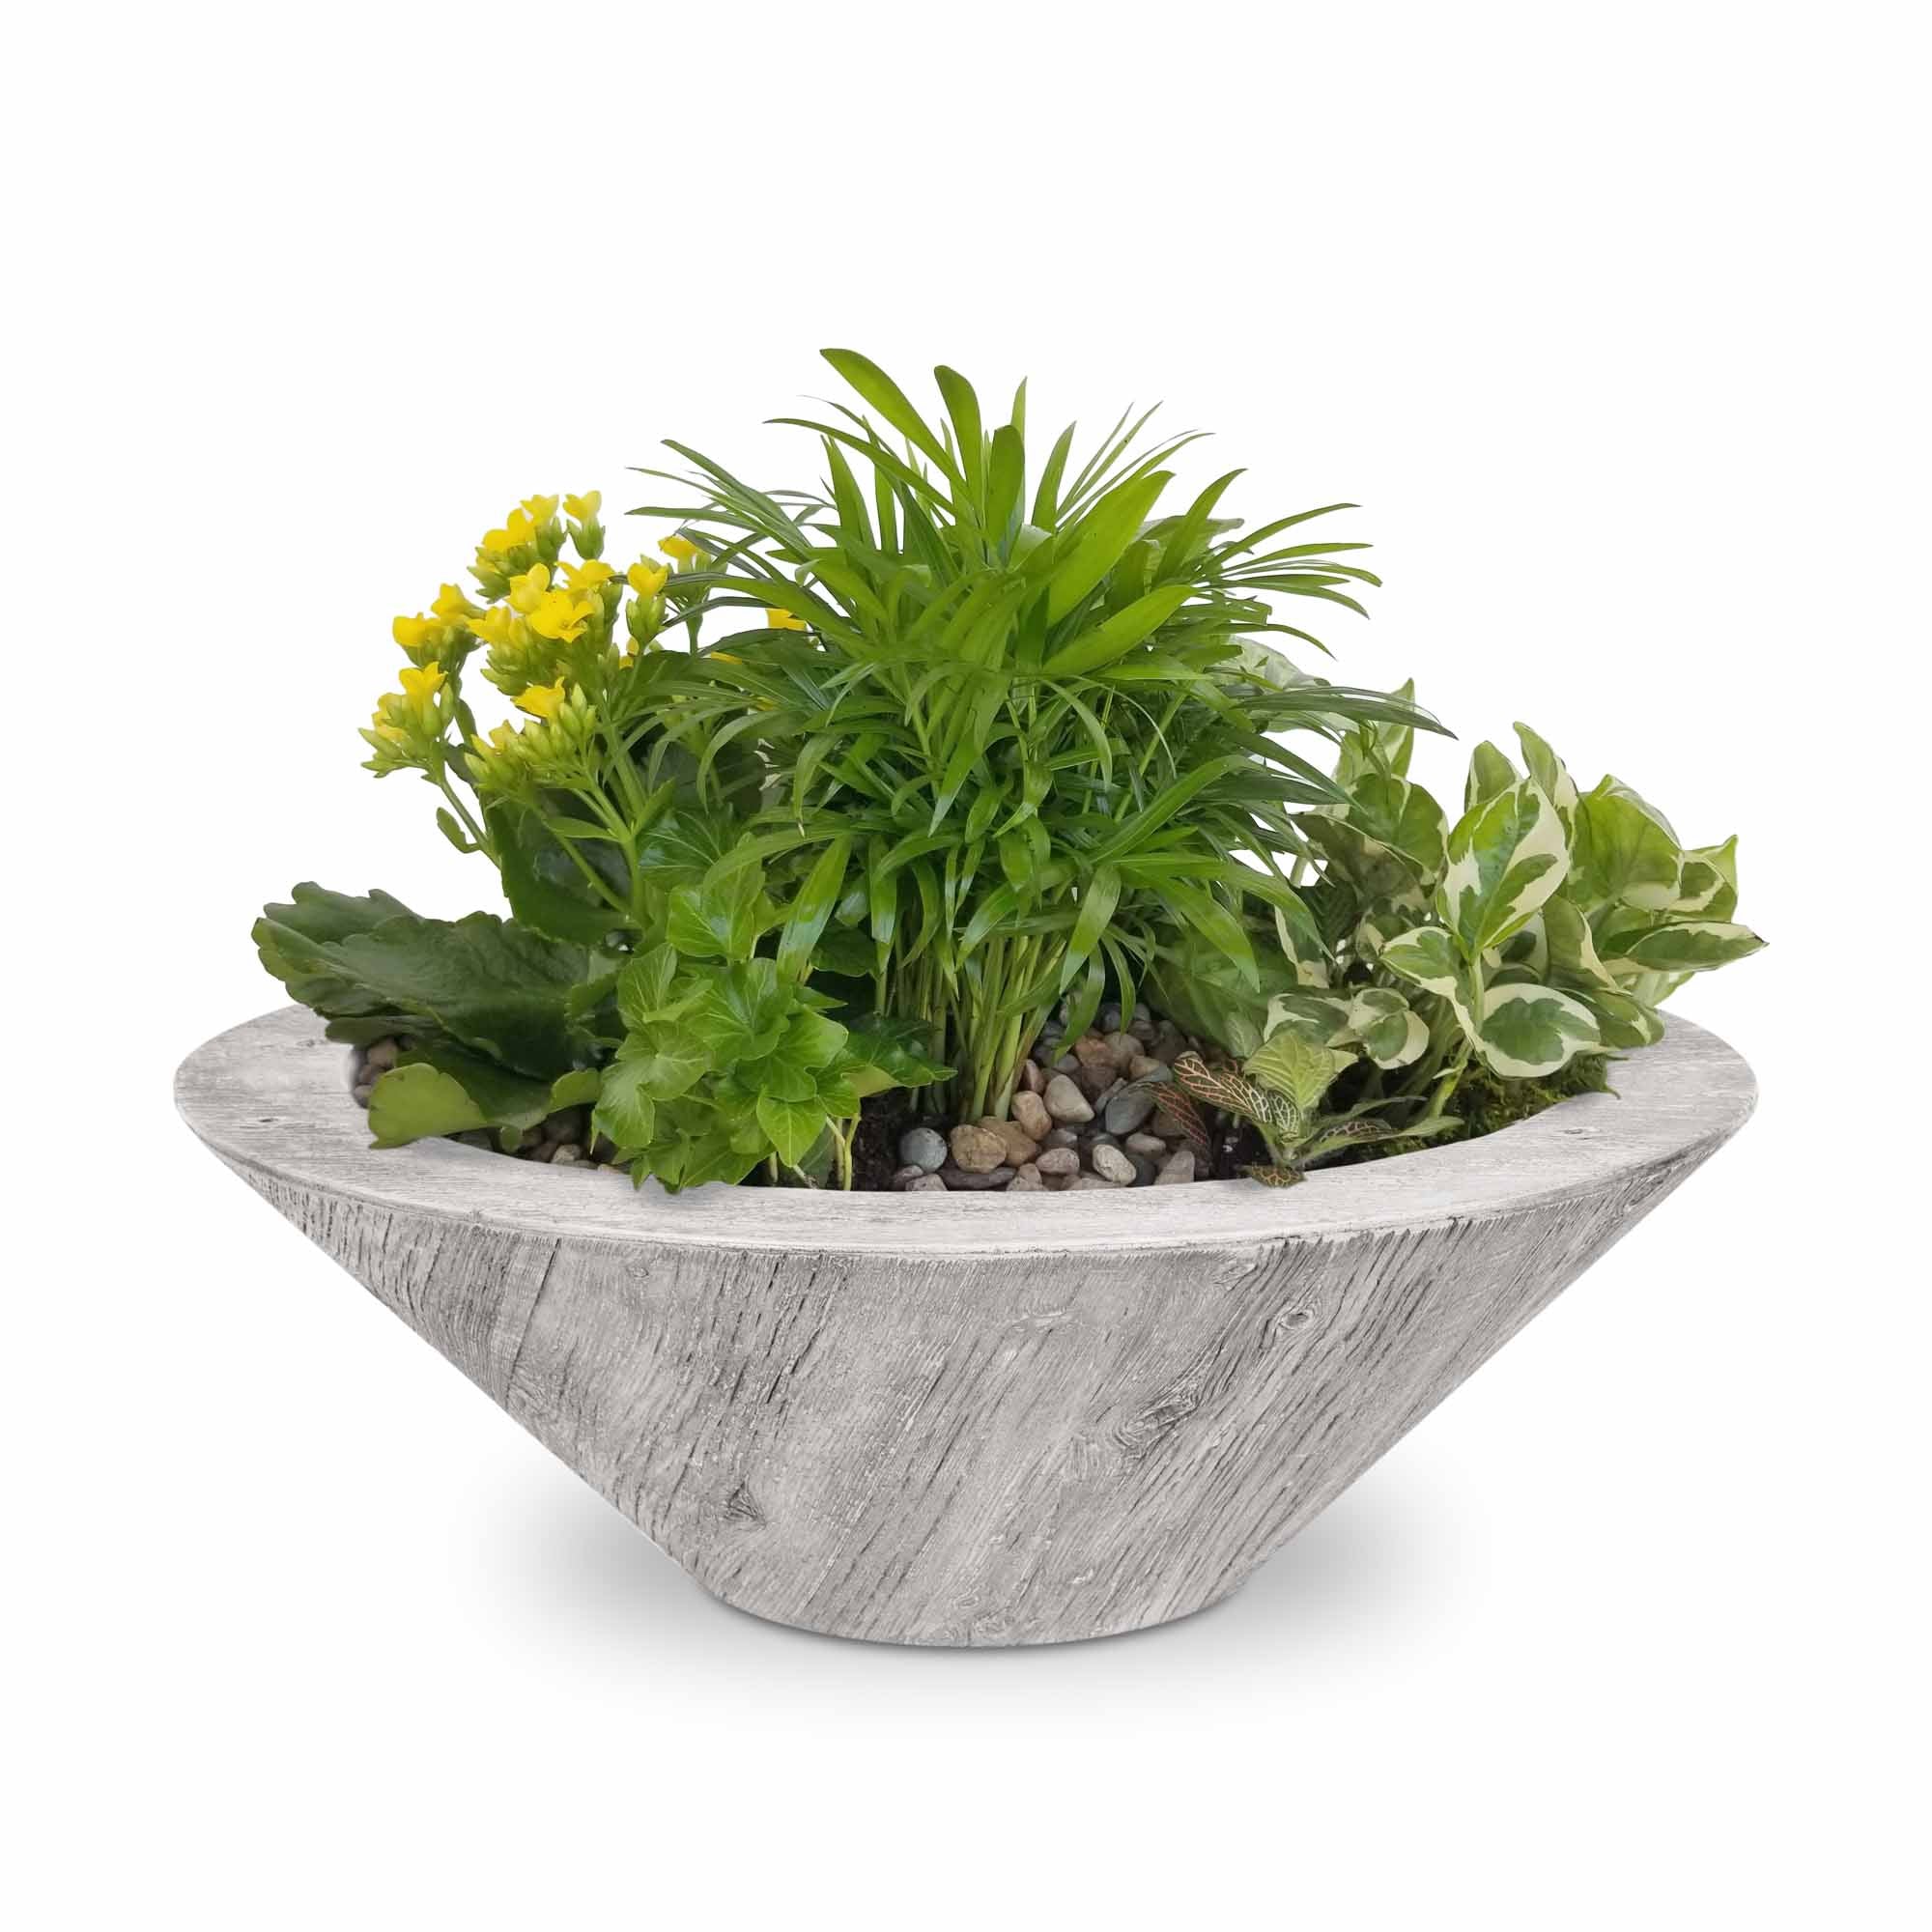 The Outdoor Plus Cazo Planter Bowl | Wood Grain Concrete